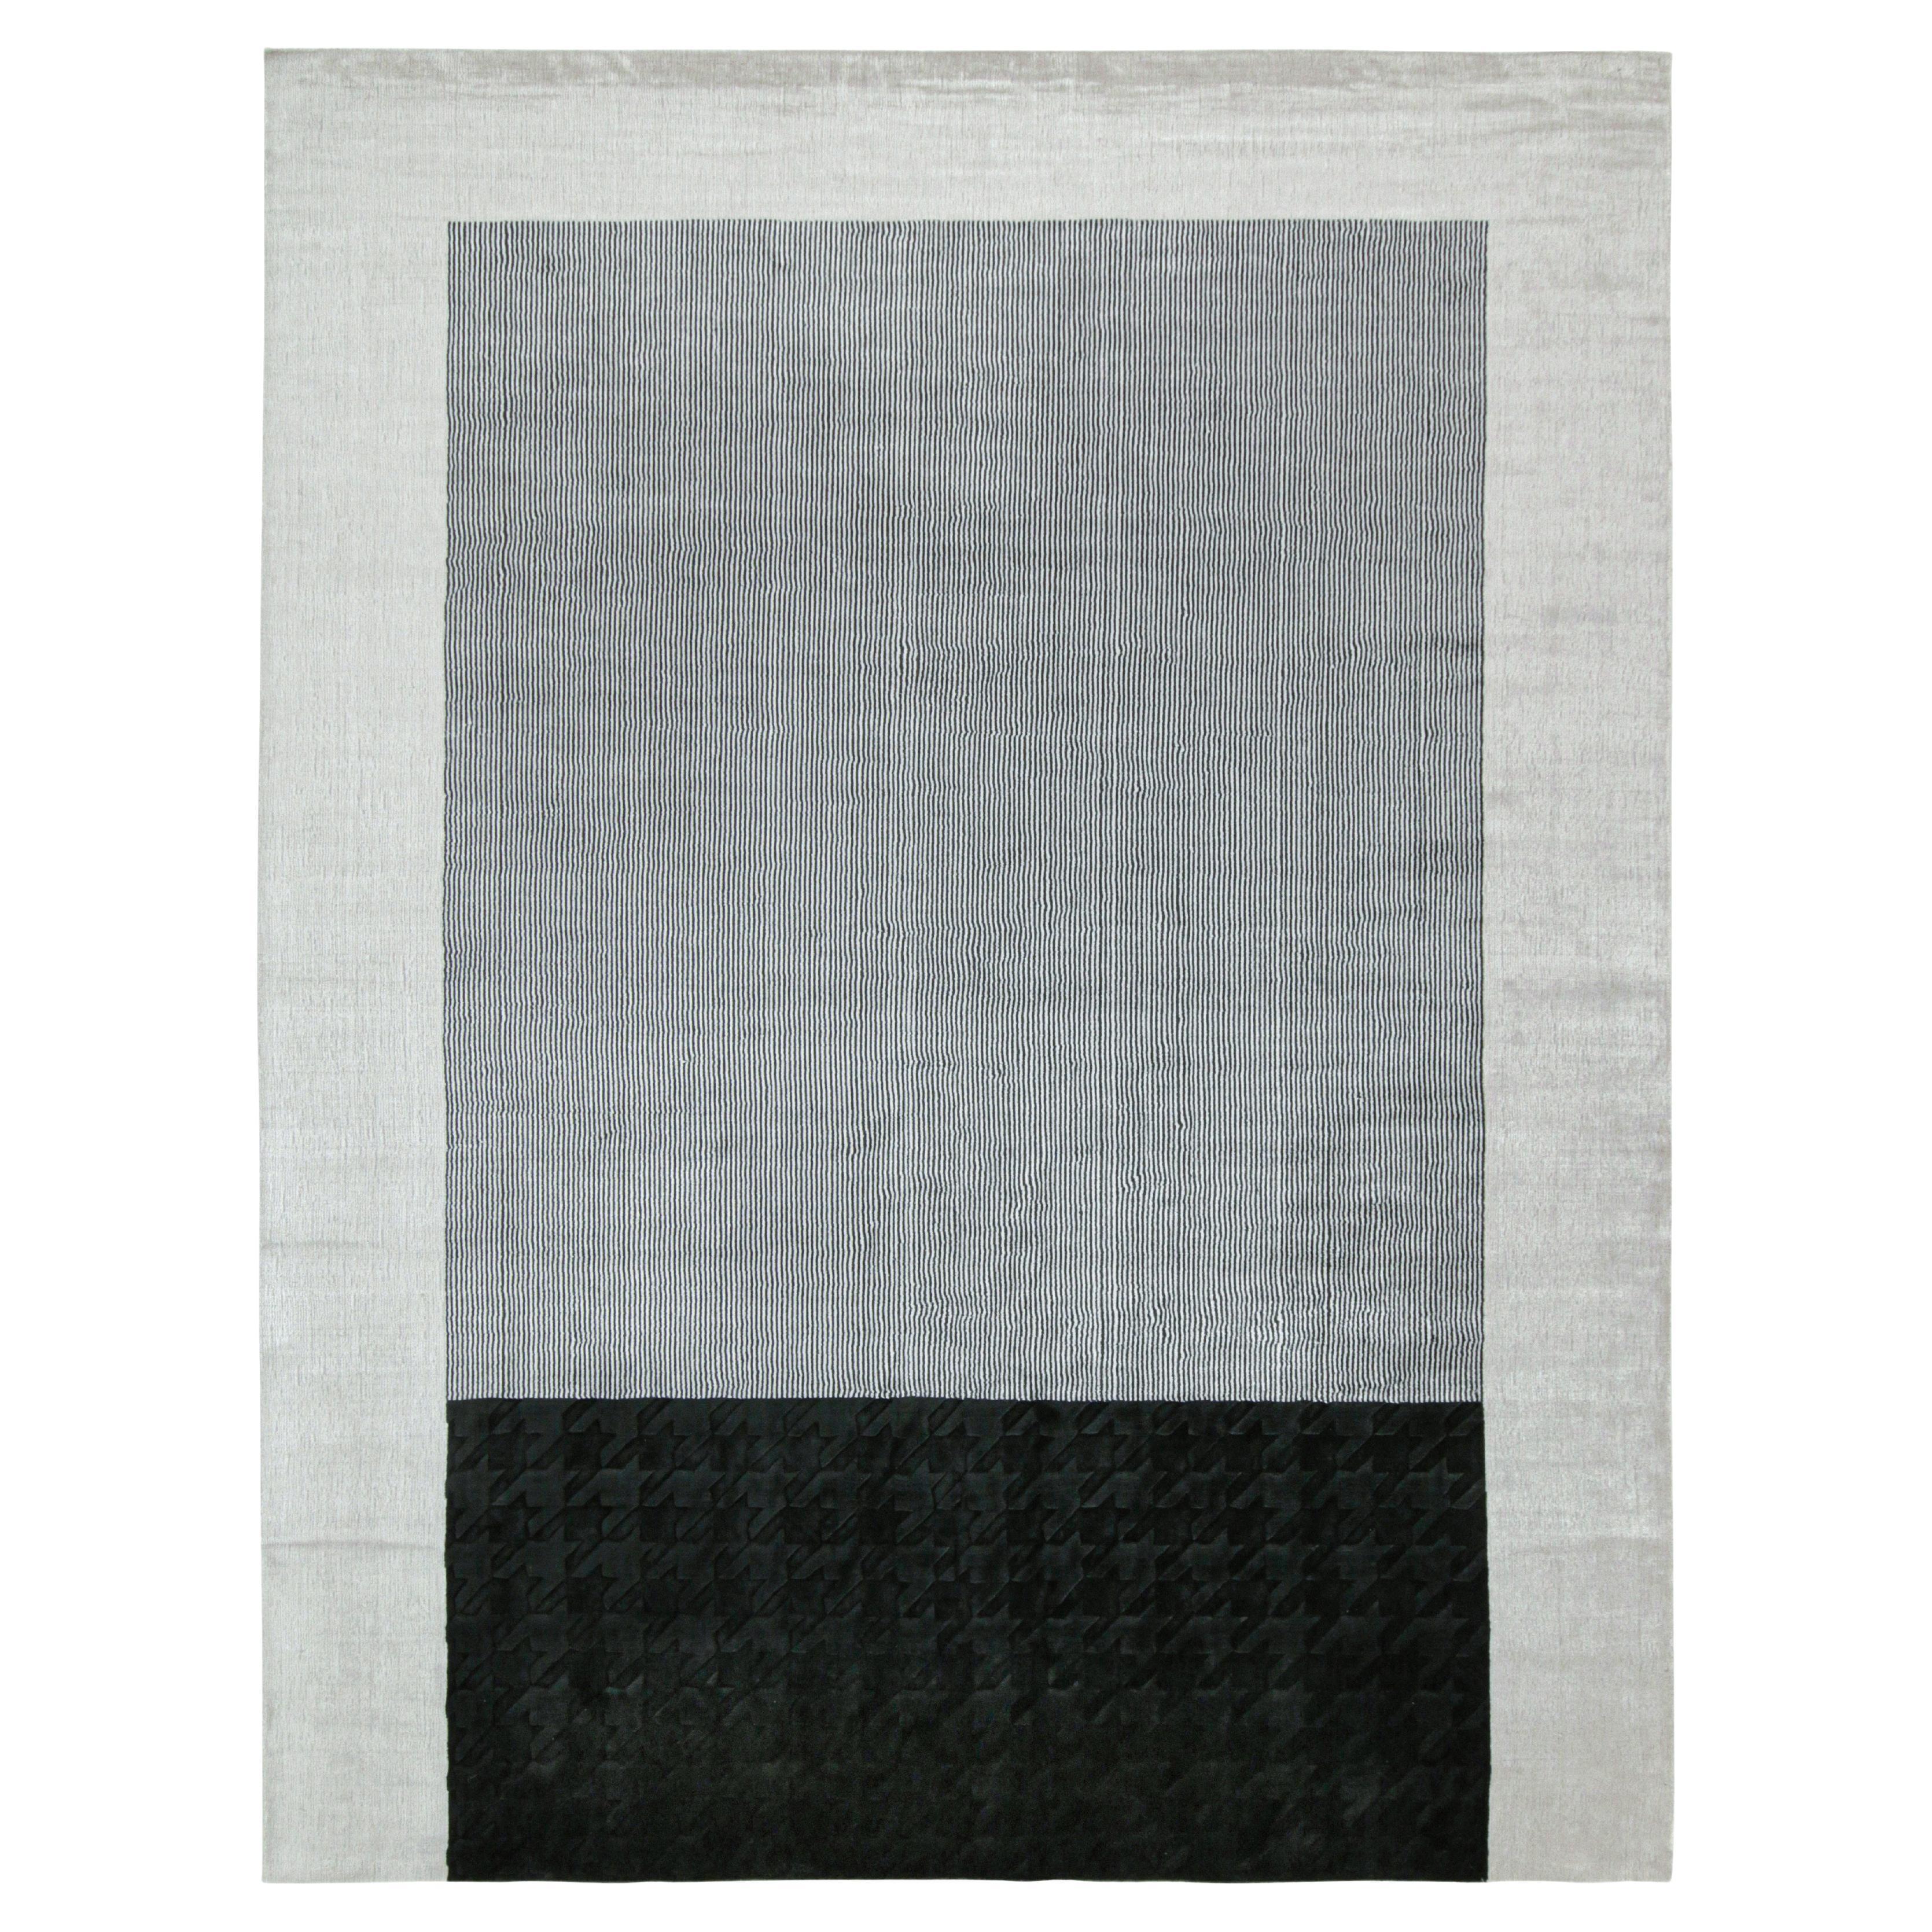 Rug & Kilim’s Modern Rug in Black and White Geometric Patterns